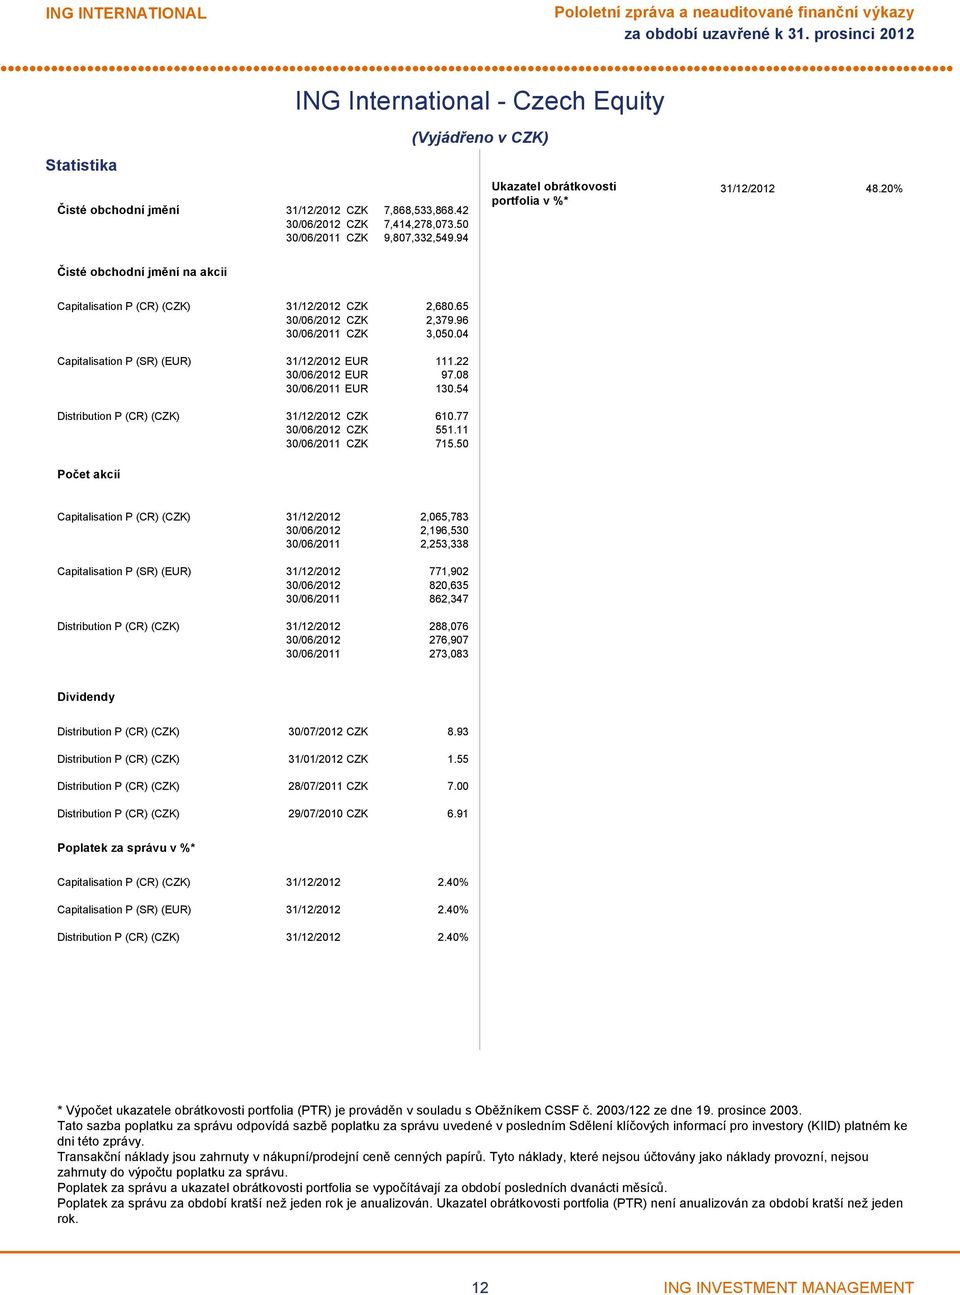 65 30/06/2012 CZK 2,379.96 30/06/2011 CZK 3,050.04 Capitalisation P (SR) (EUR) 31/12/2012 EUR 111.22 30/06/2012 EUR 97.08 30/06/2011 EUR 130.54 Distribution P (CR) (CZK) 31/12/2012 CZK 610.